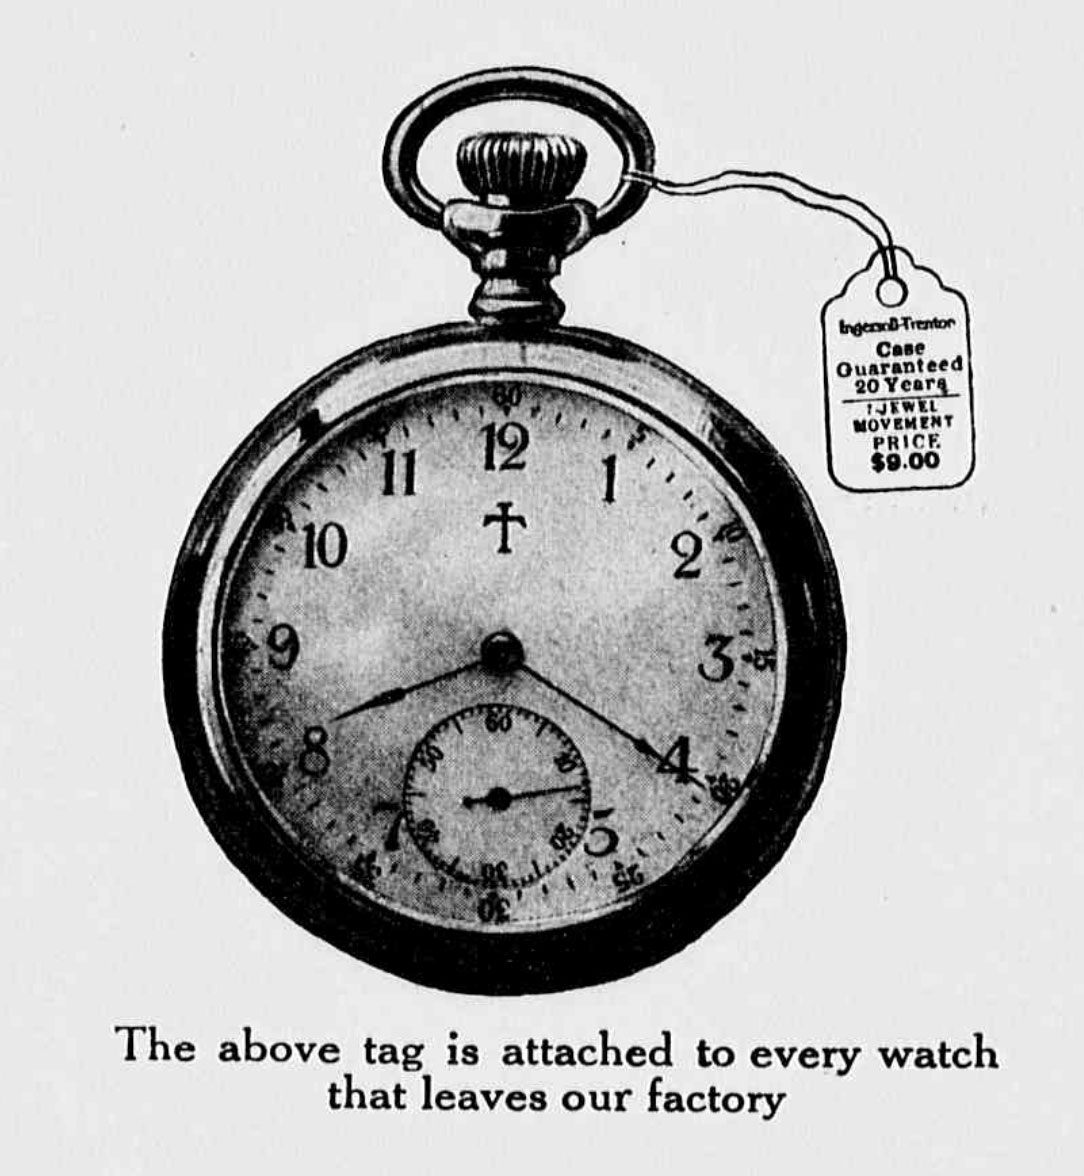 Trenton Watch Co. Image